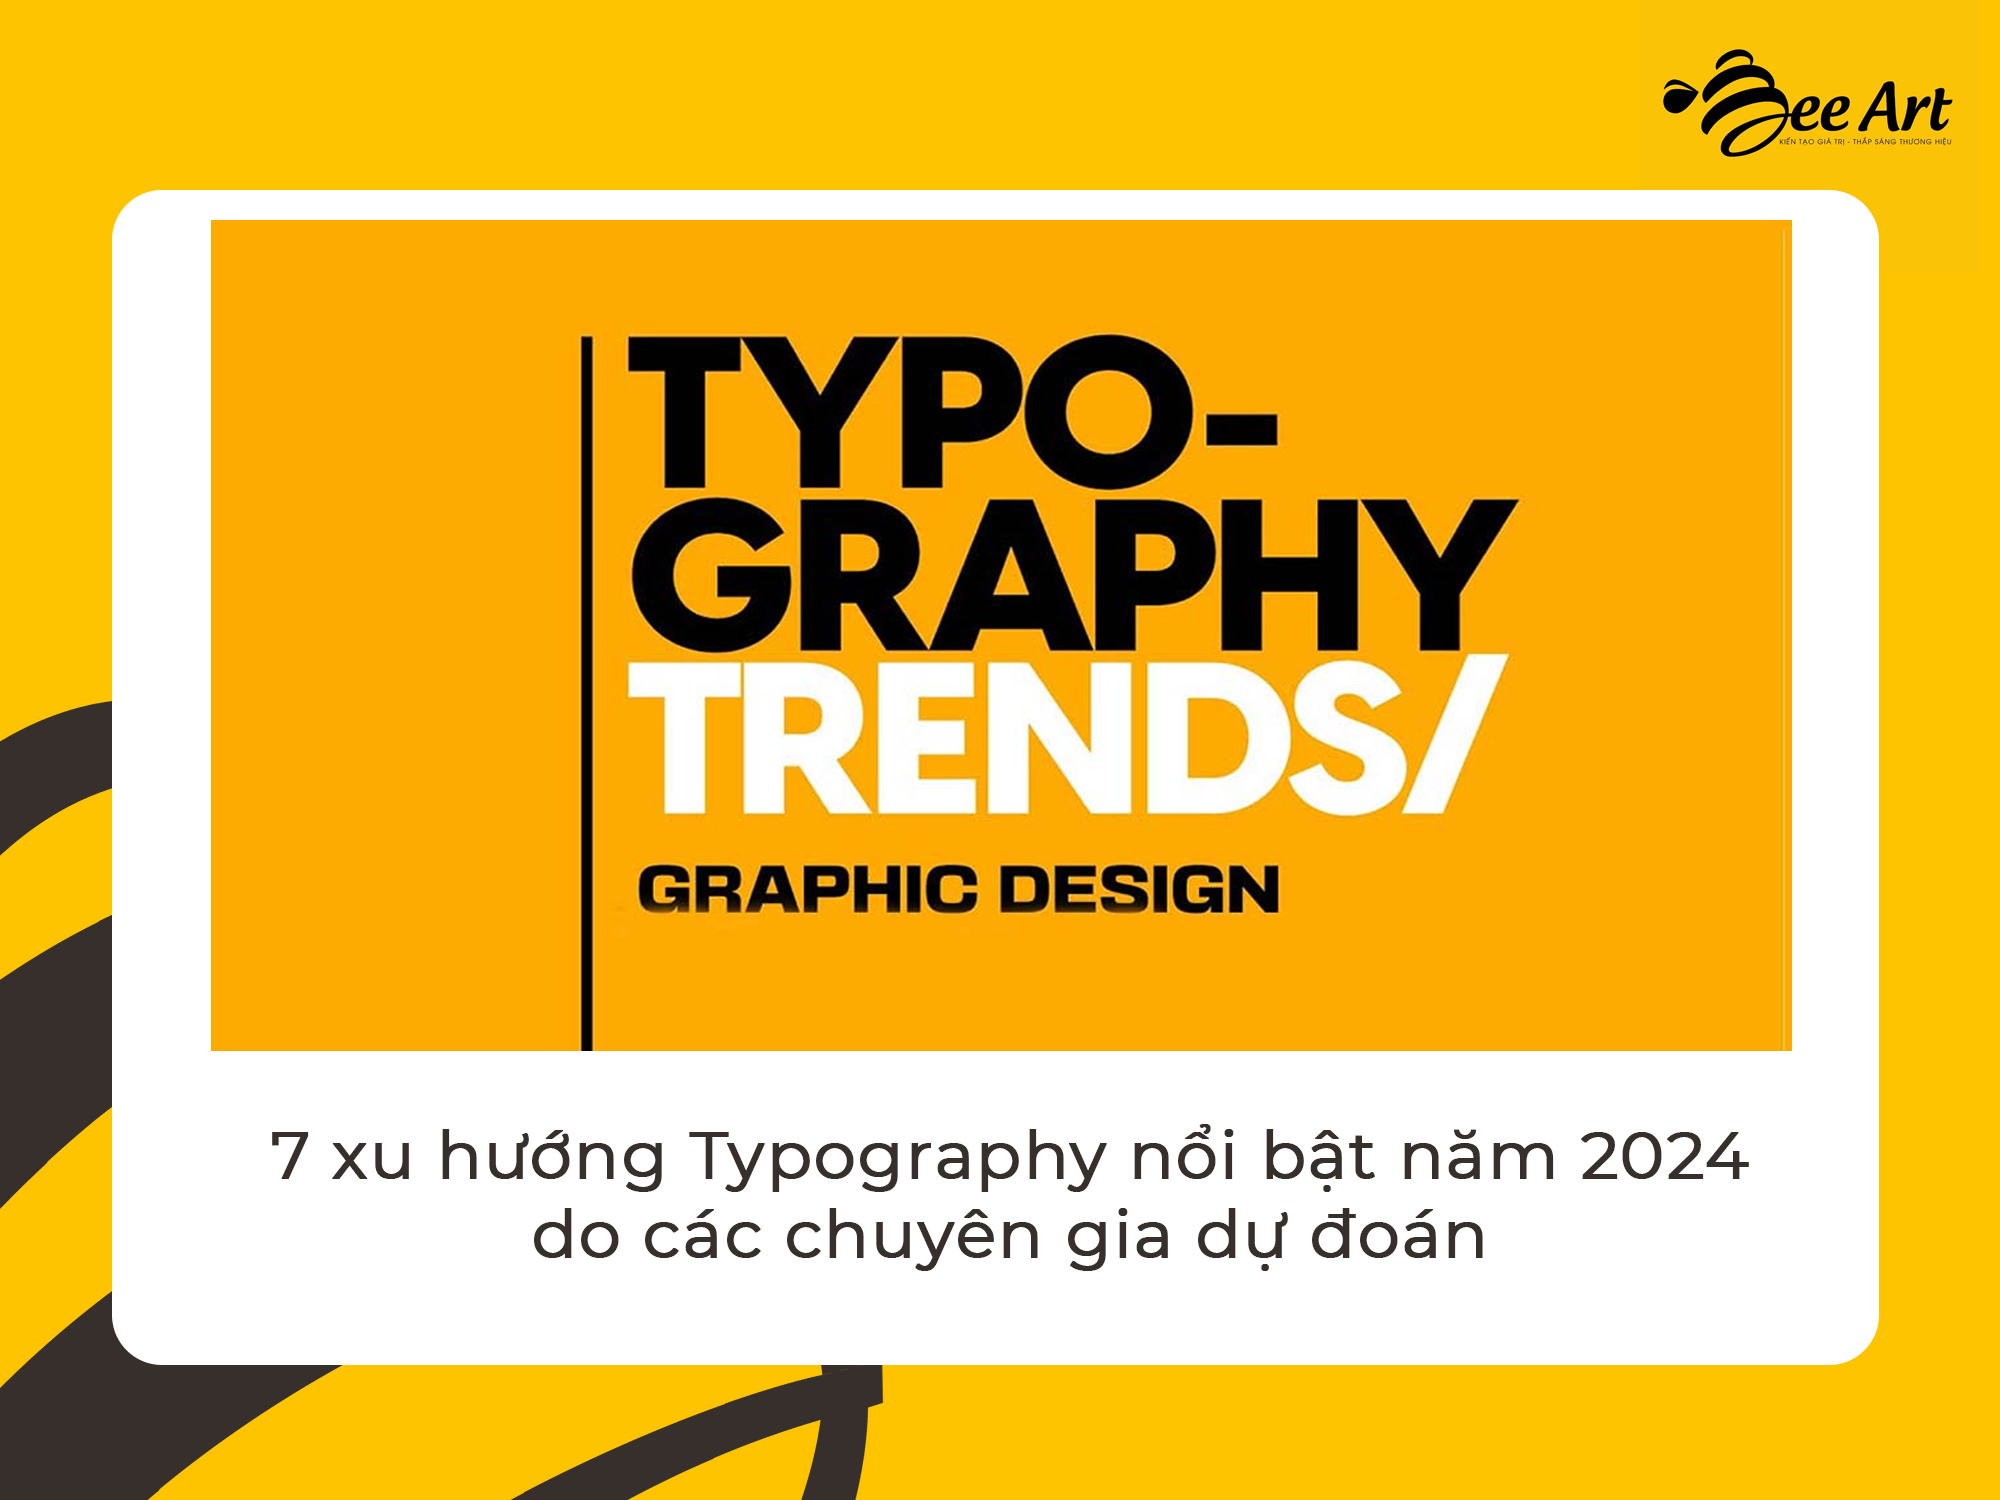 xu hướng Typography 2024 0.png